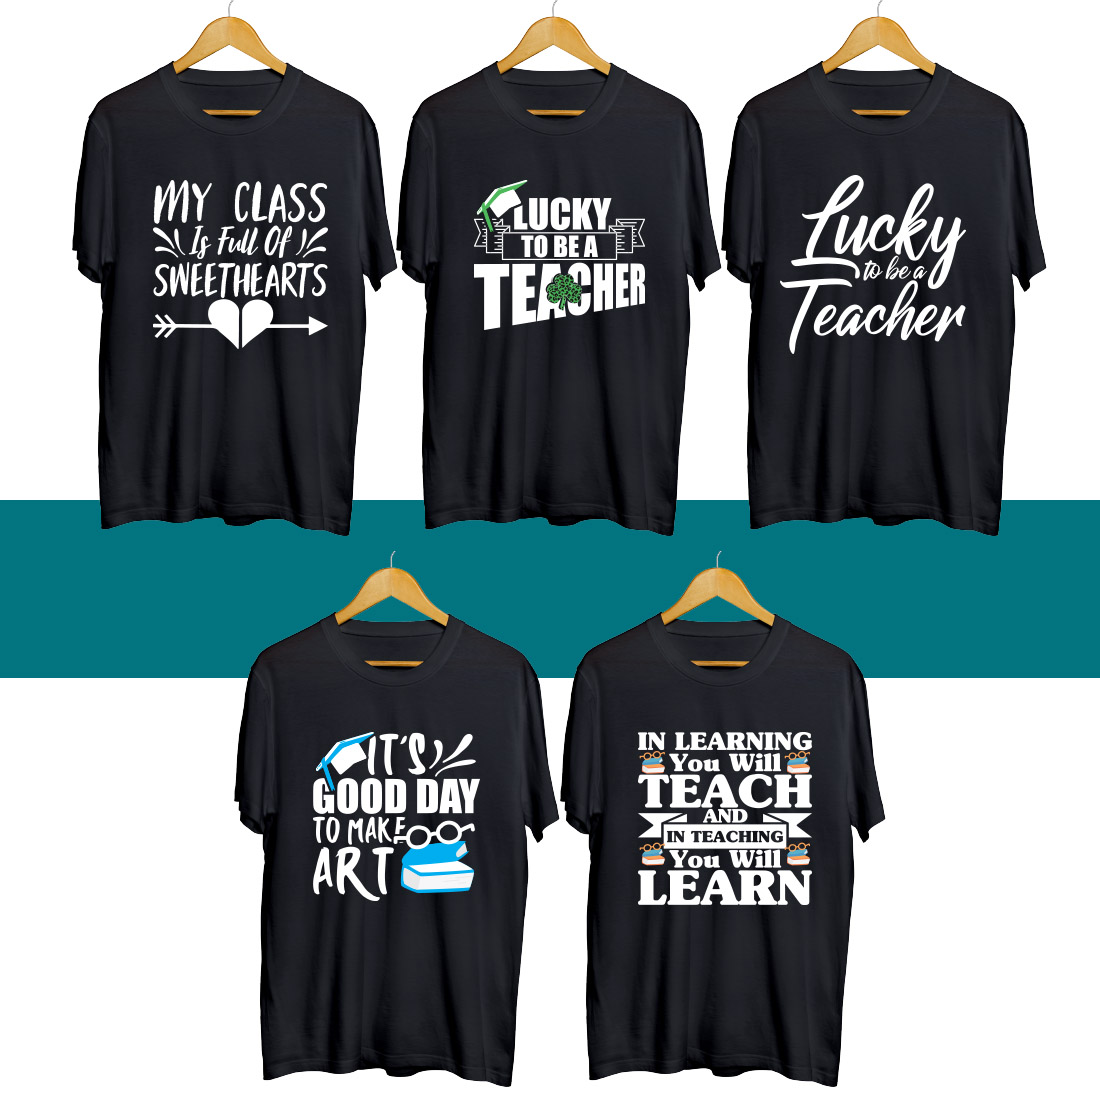 Teacher's Day SVG T Shirt Designs Bundle preview image.